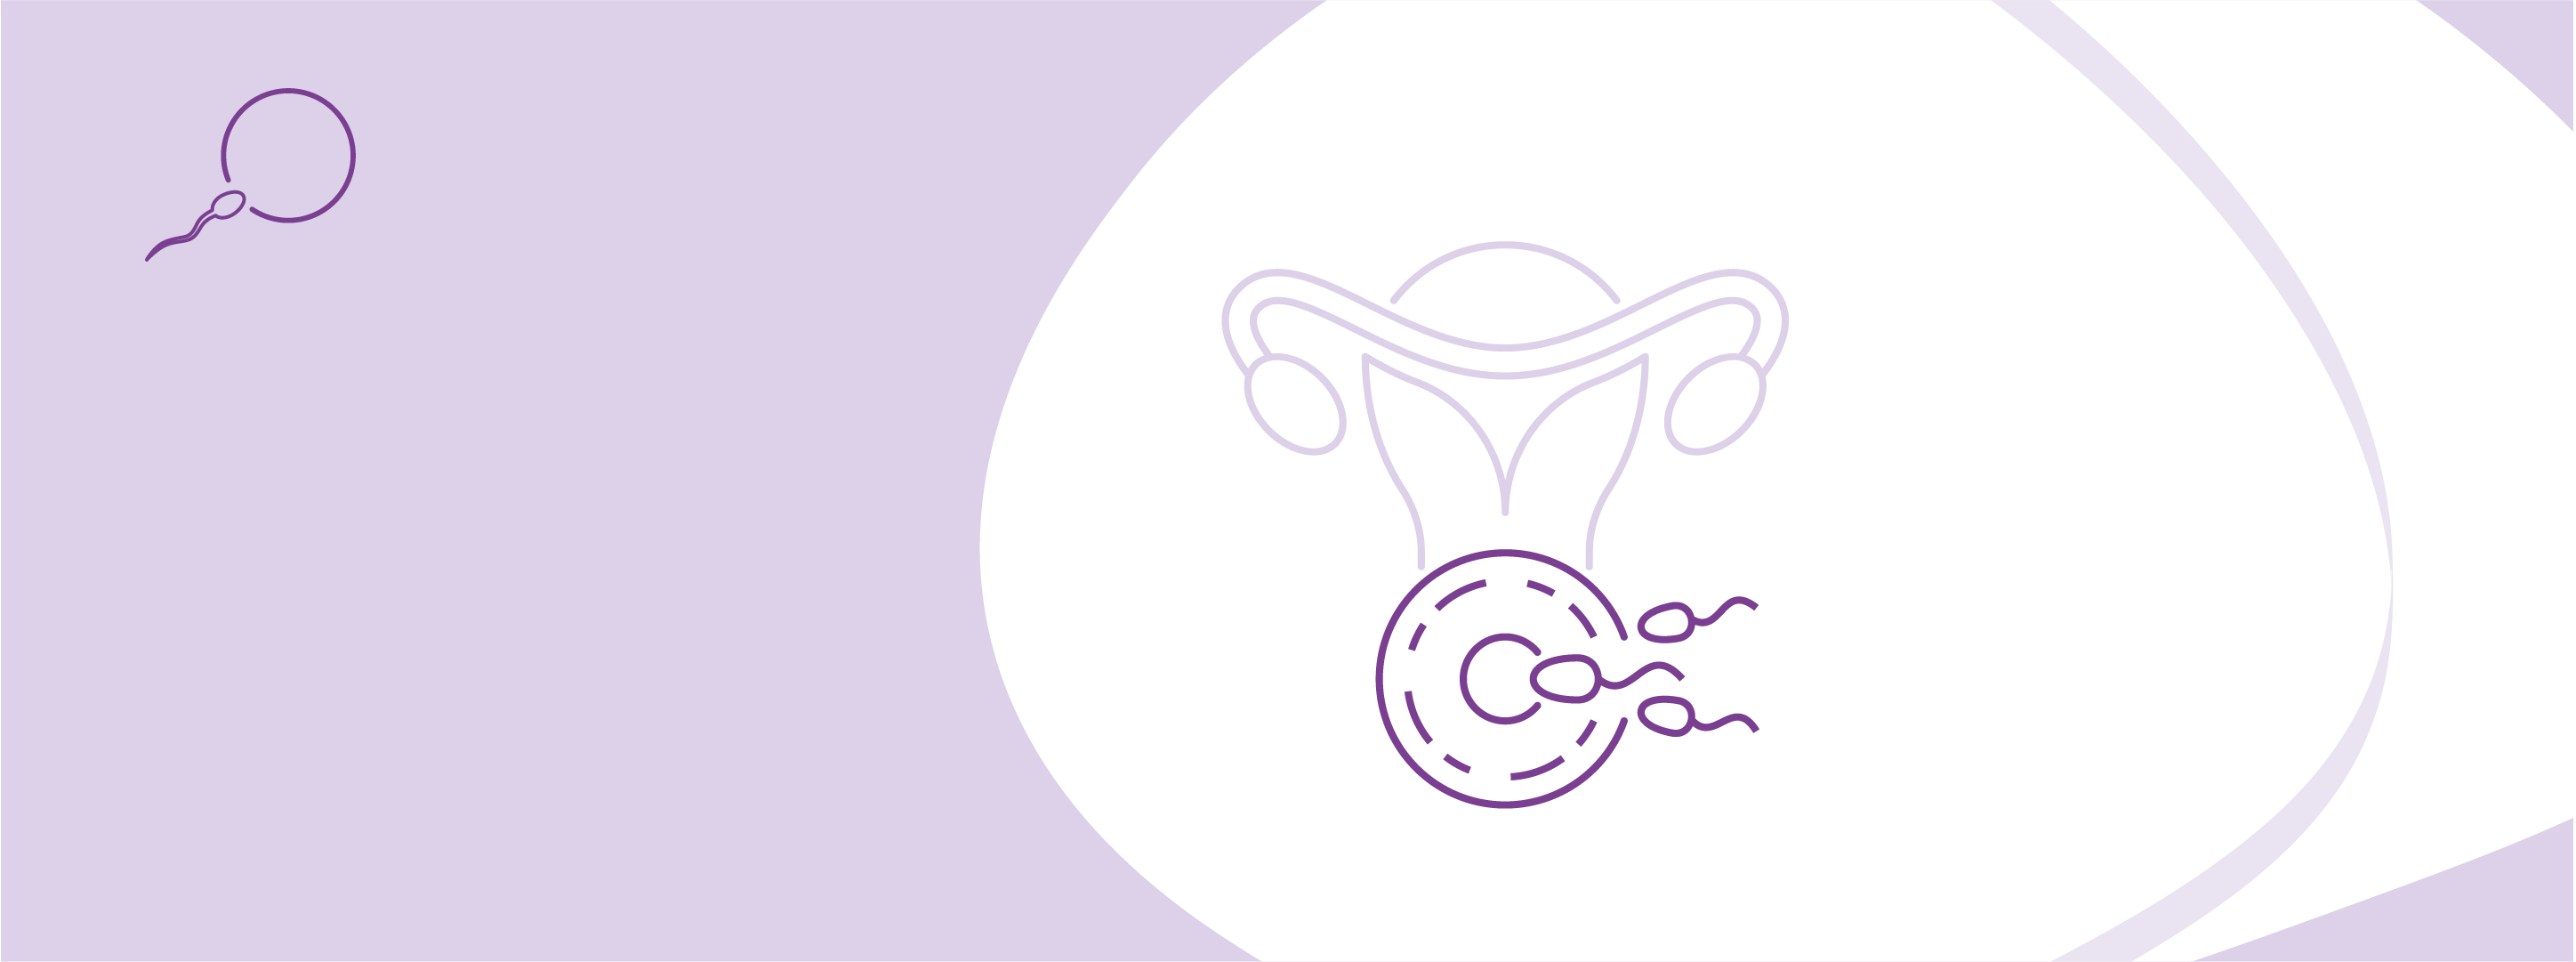 Програма ЕКЗ із медикаментозною стимуляцією та перенесенням ембріонів